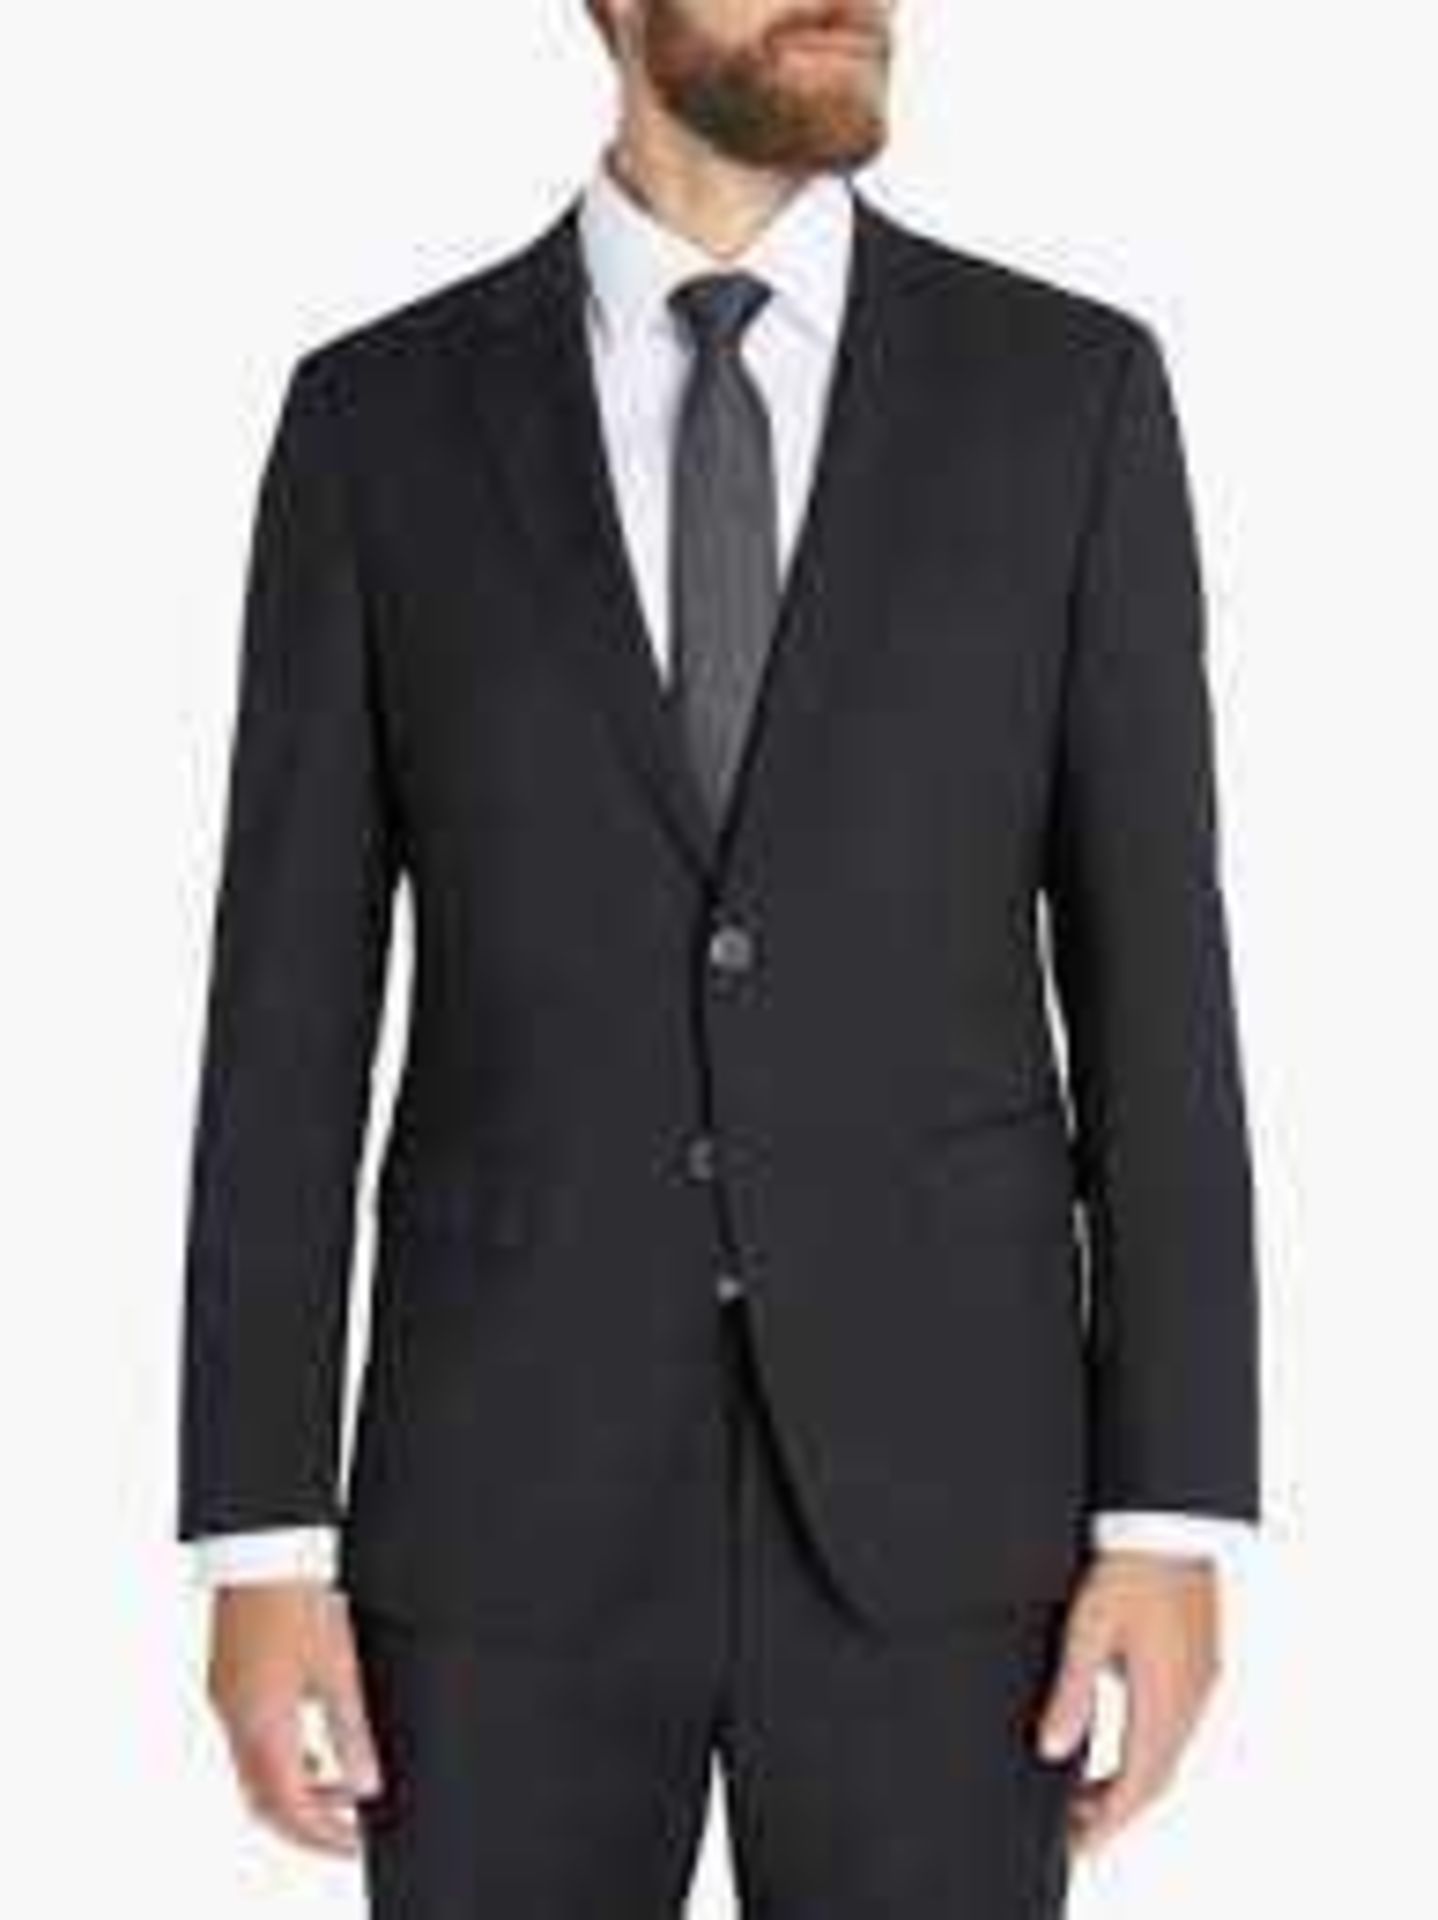 RRP £280 2 Black John Lewis Suit Jackets 36R